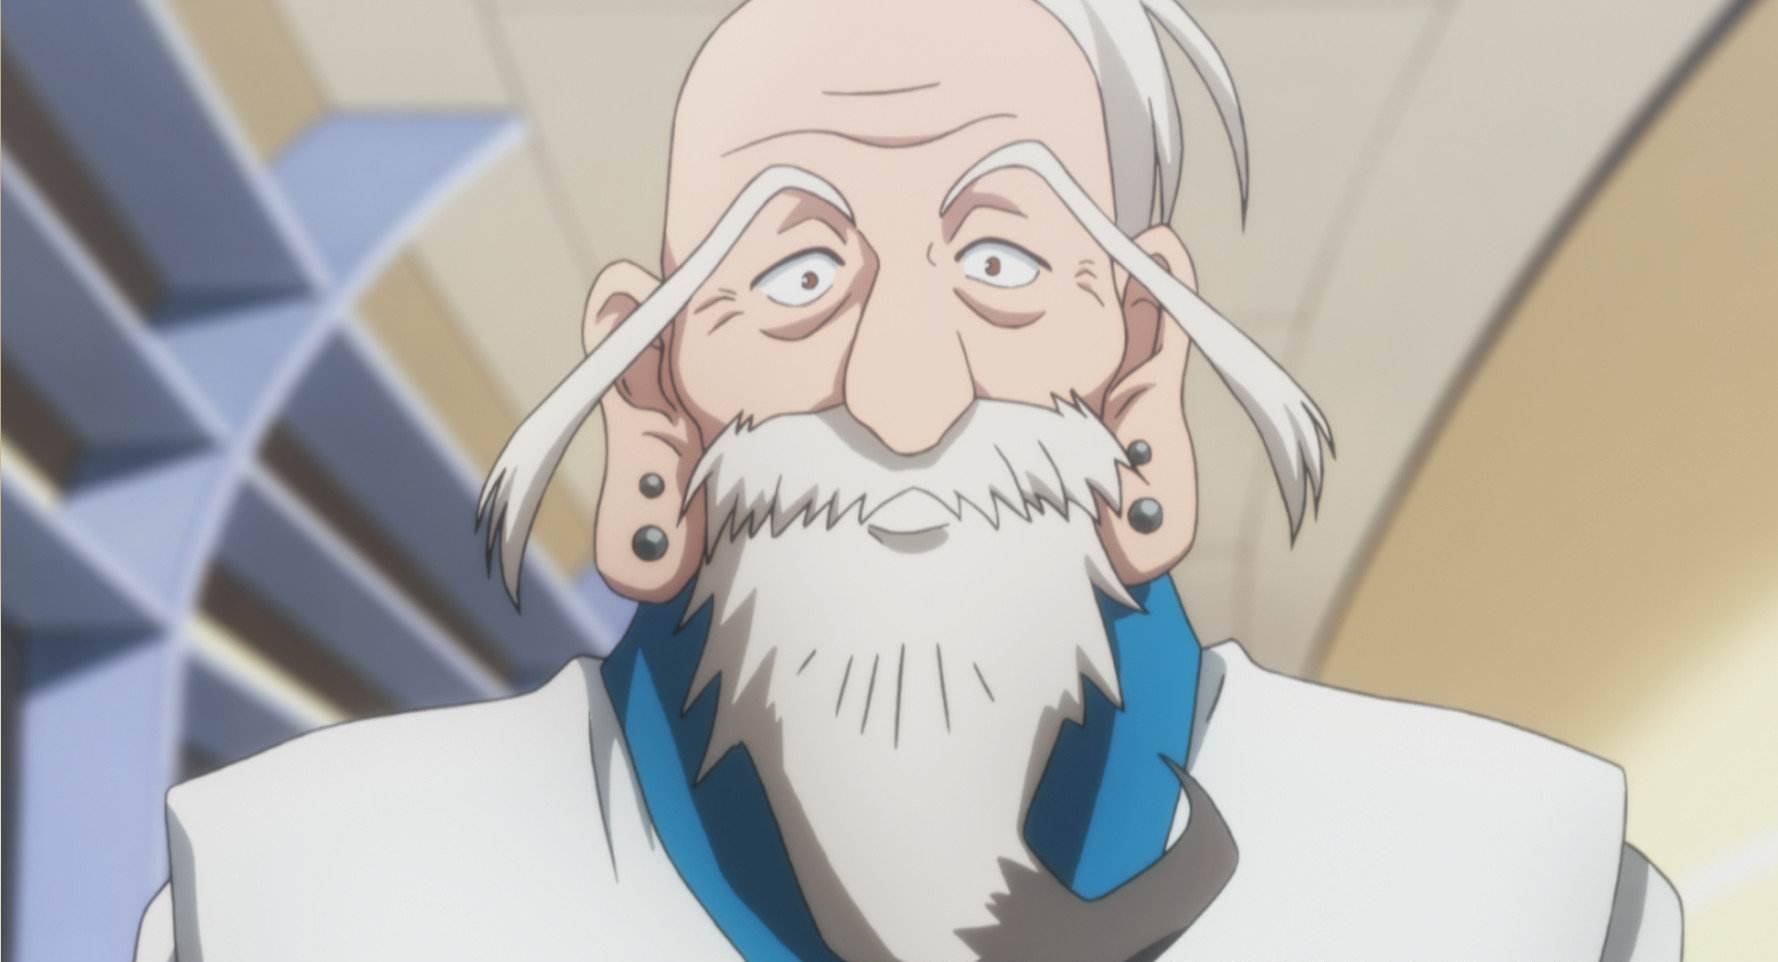 原创许多动漫里面都有一个白胡子老头,实力强大,你都知道吗?